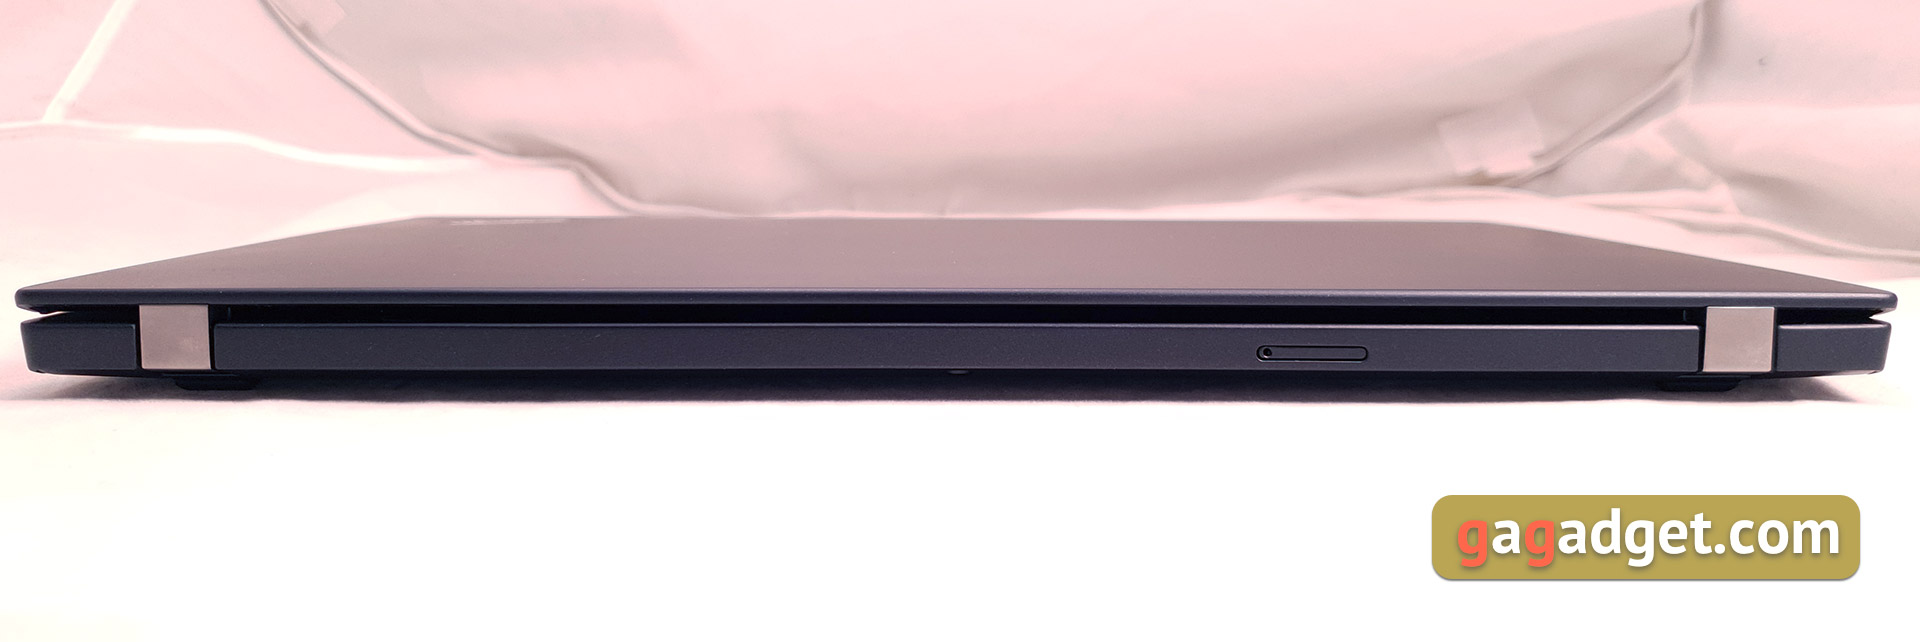 Recenzja Notebooka Lenovo ThinkPad T490s: szczery pracownik-7